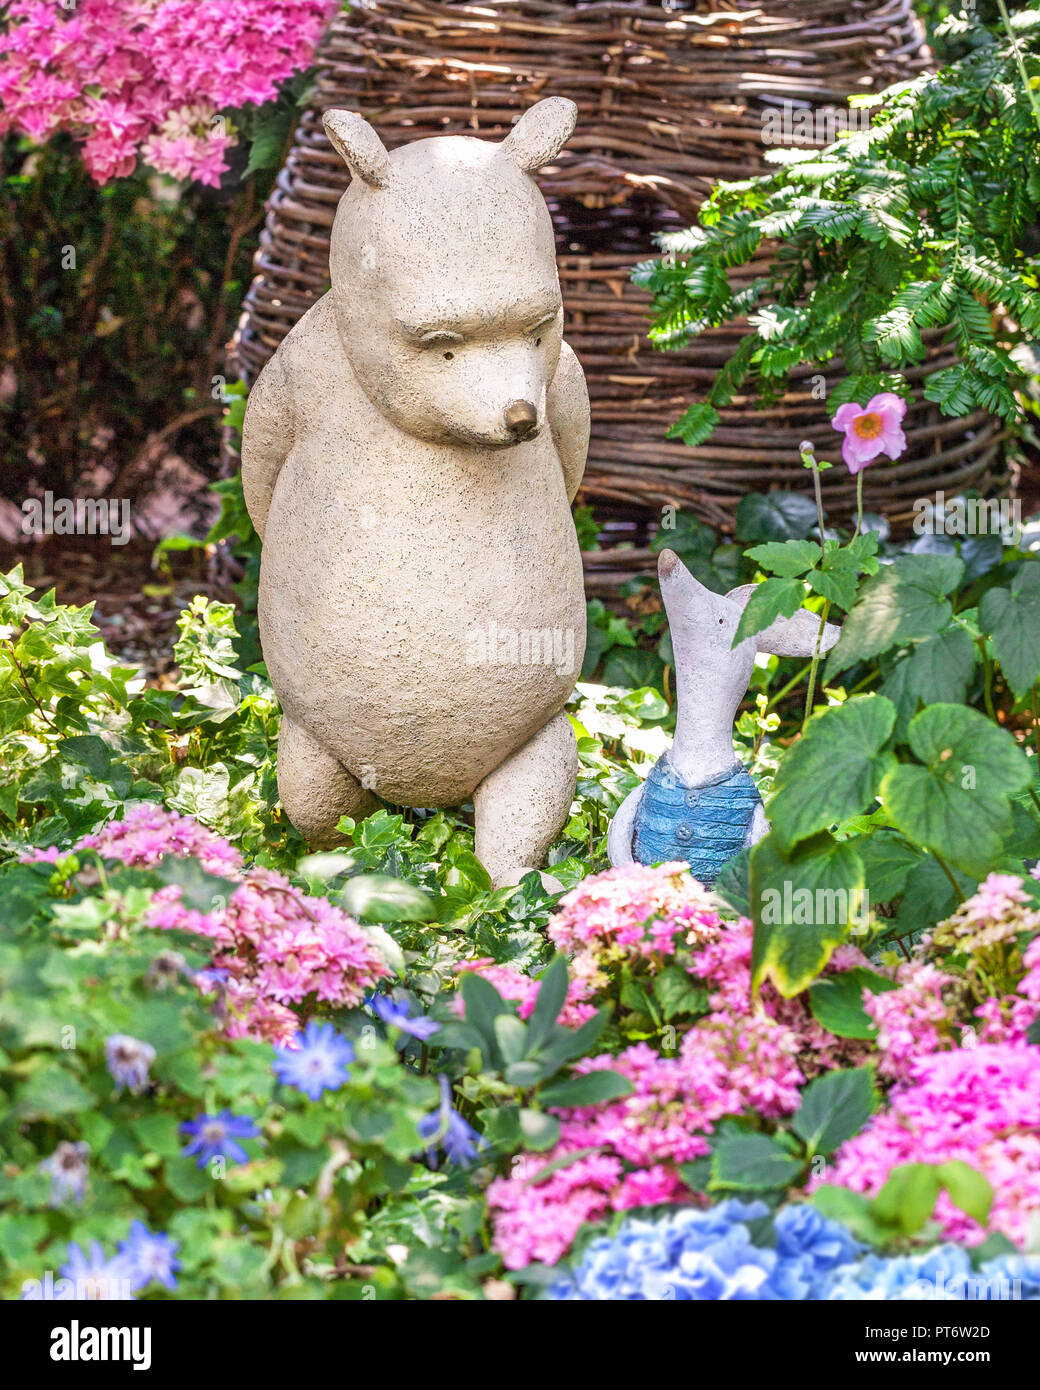 Escultura de personajes de dibujos animados de Disney Winnie the Pooh y  Piglet. Instalación en el jardín de flores de invernaderos domo, Singapur  Fotografía de stock - Alamy